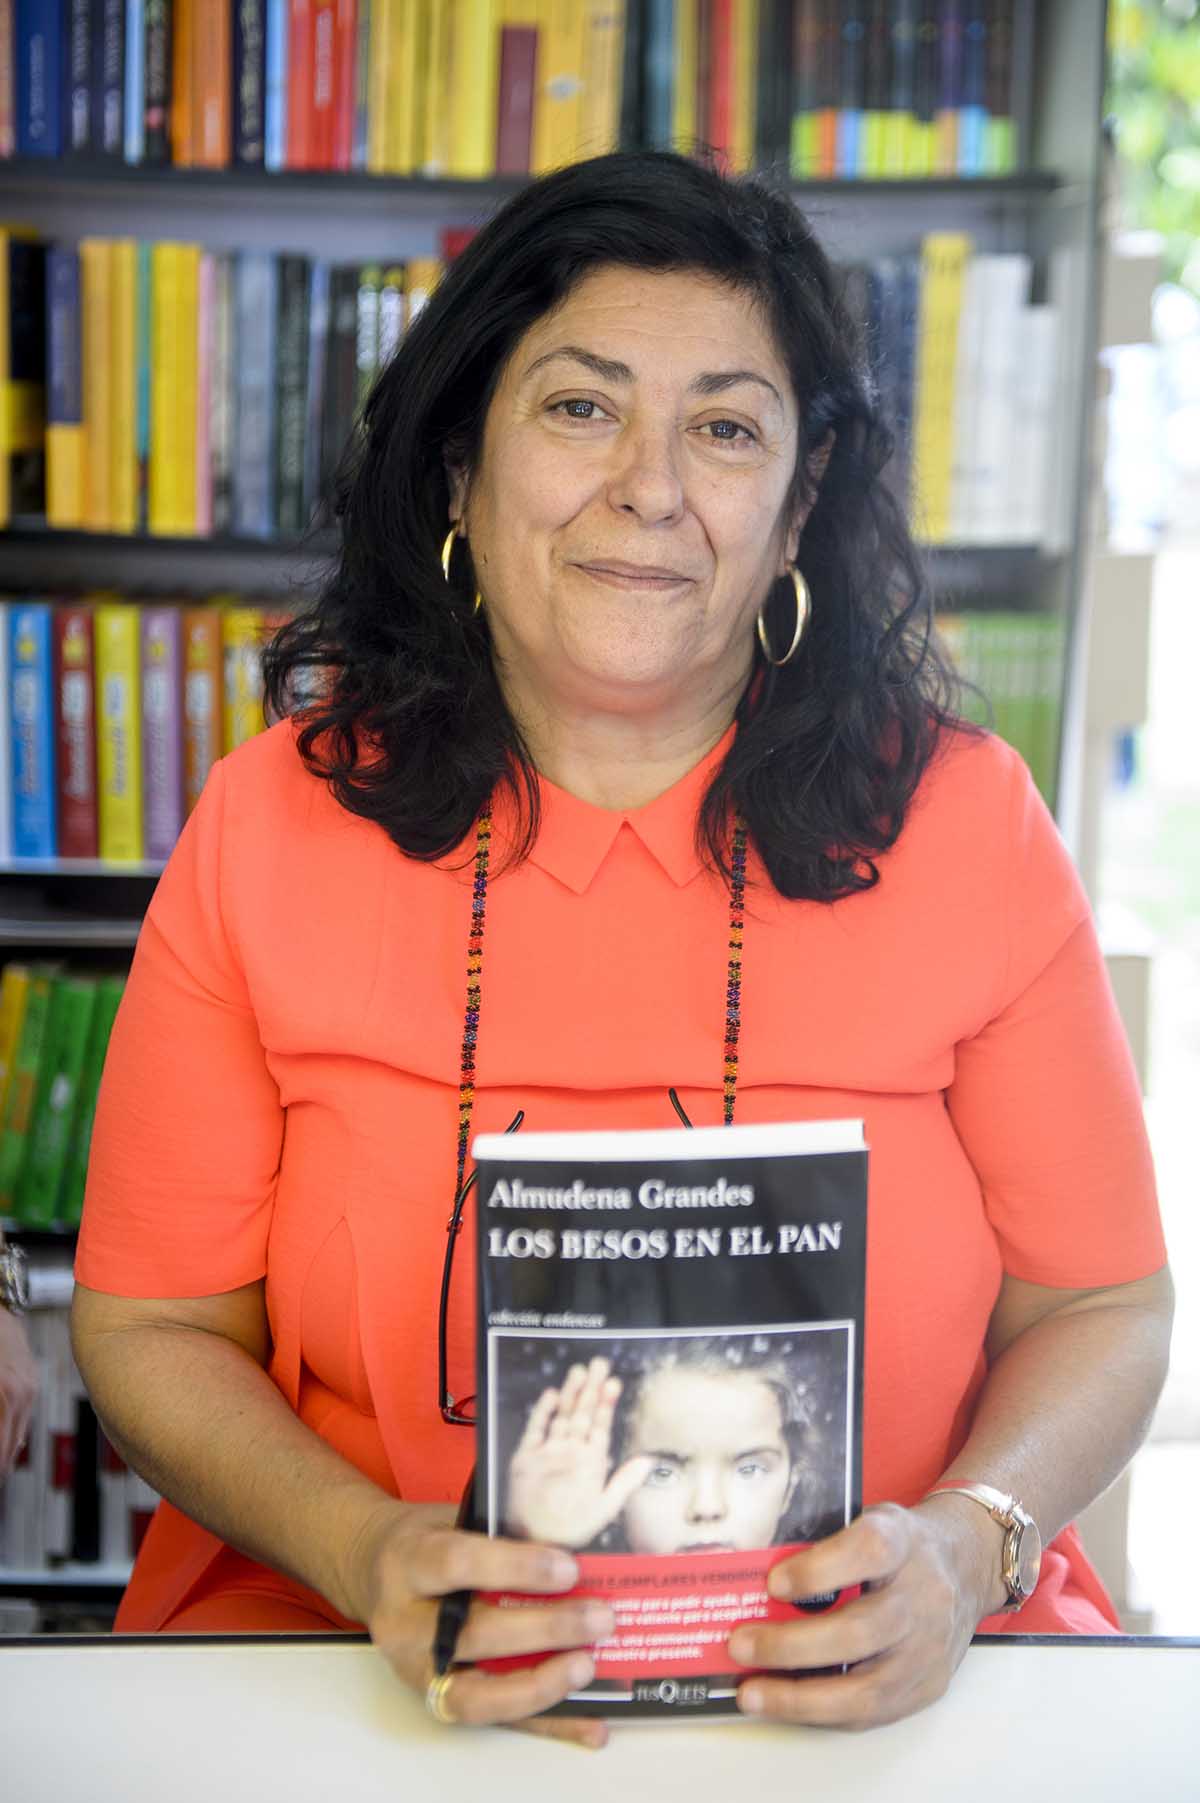 La escritora Almudena Grandes durante la promoción del libro " los besos en el pan " en la Feria del Libro de Madrid.